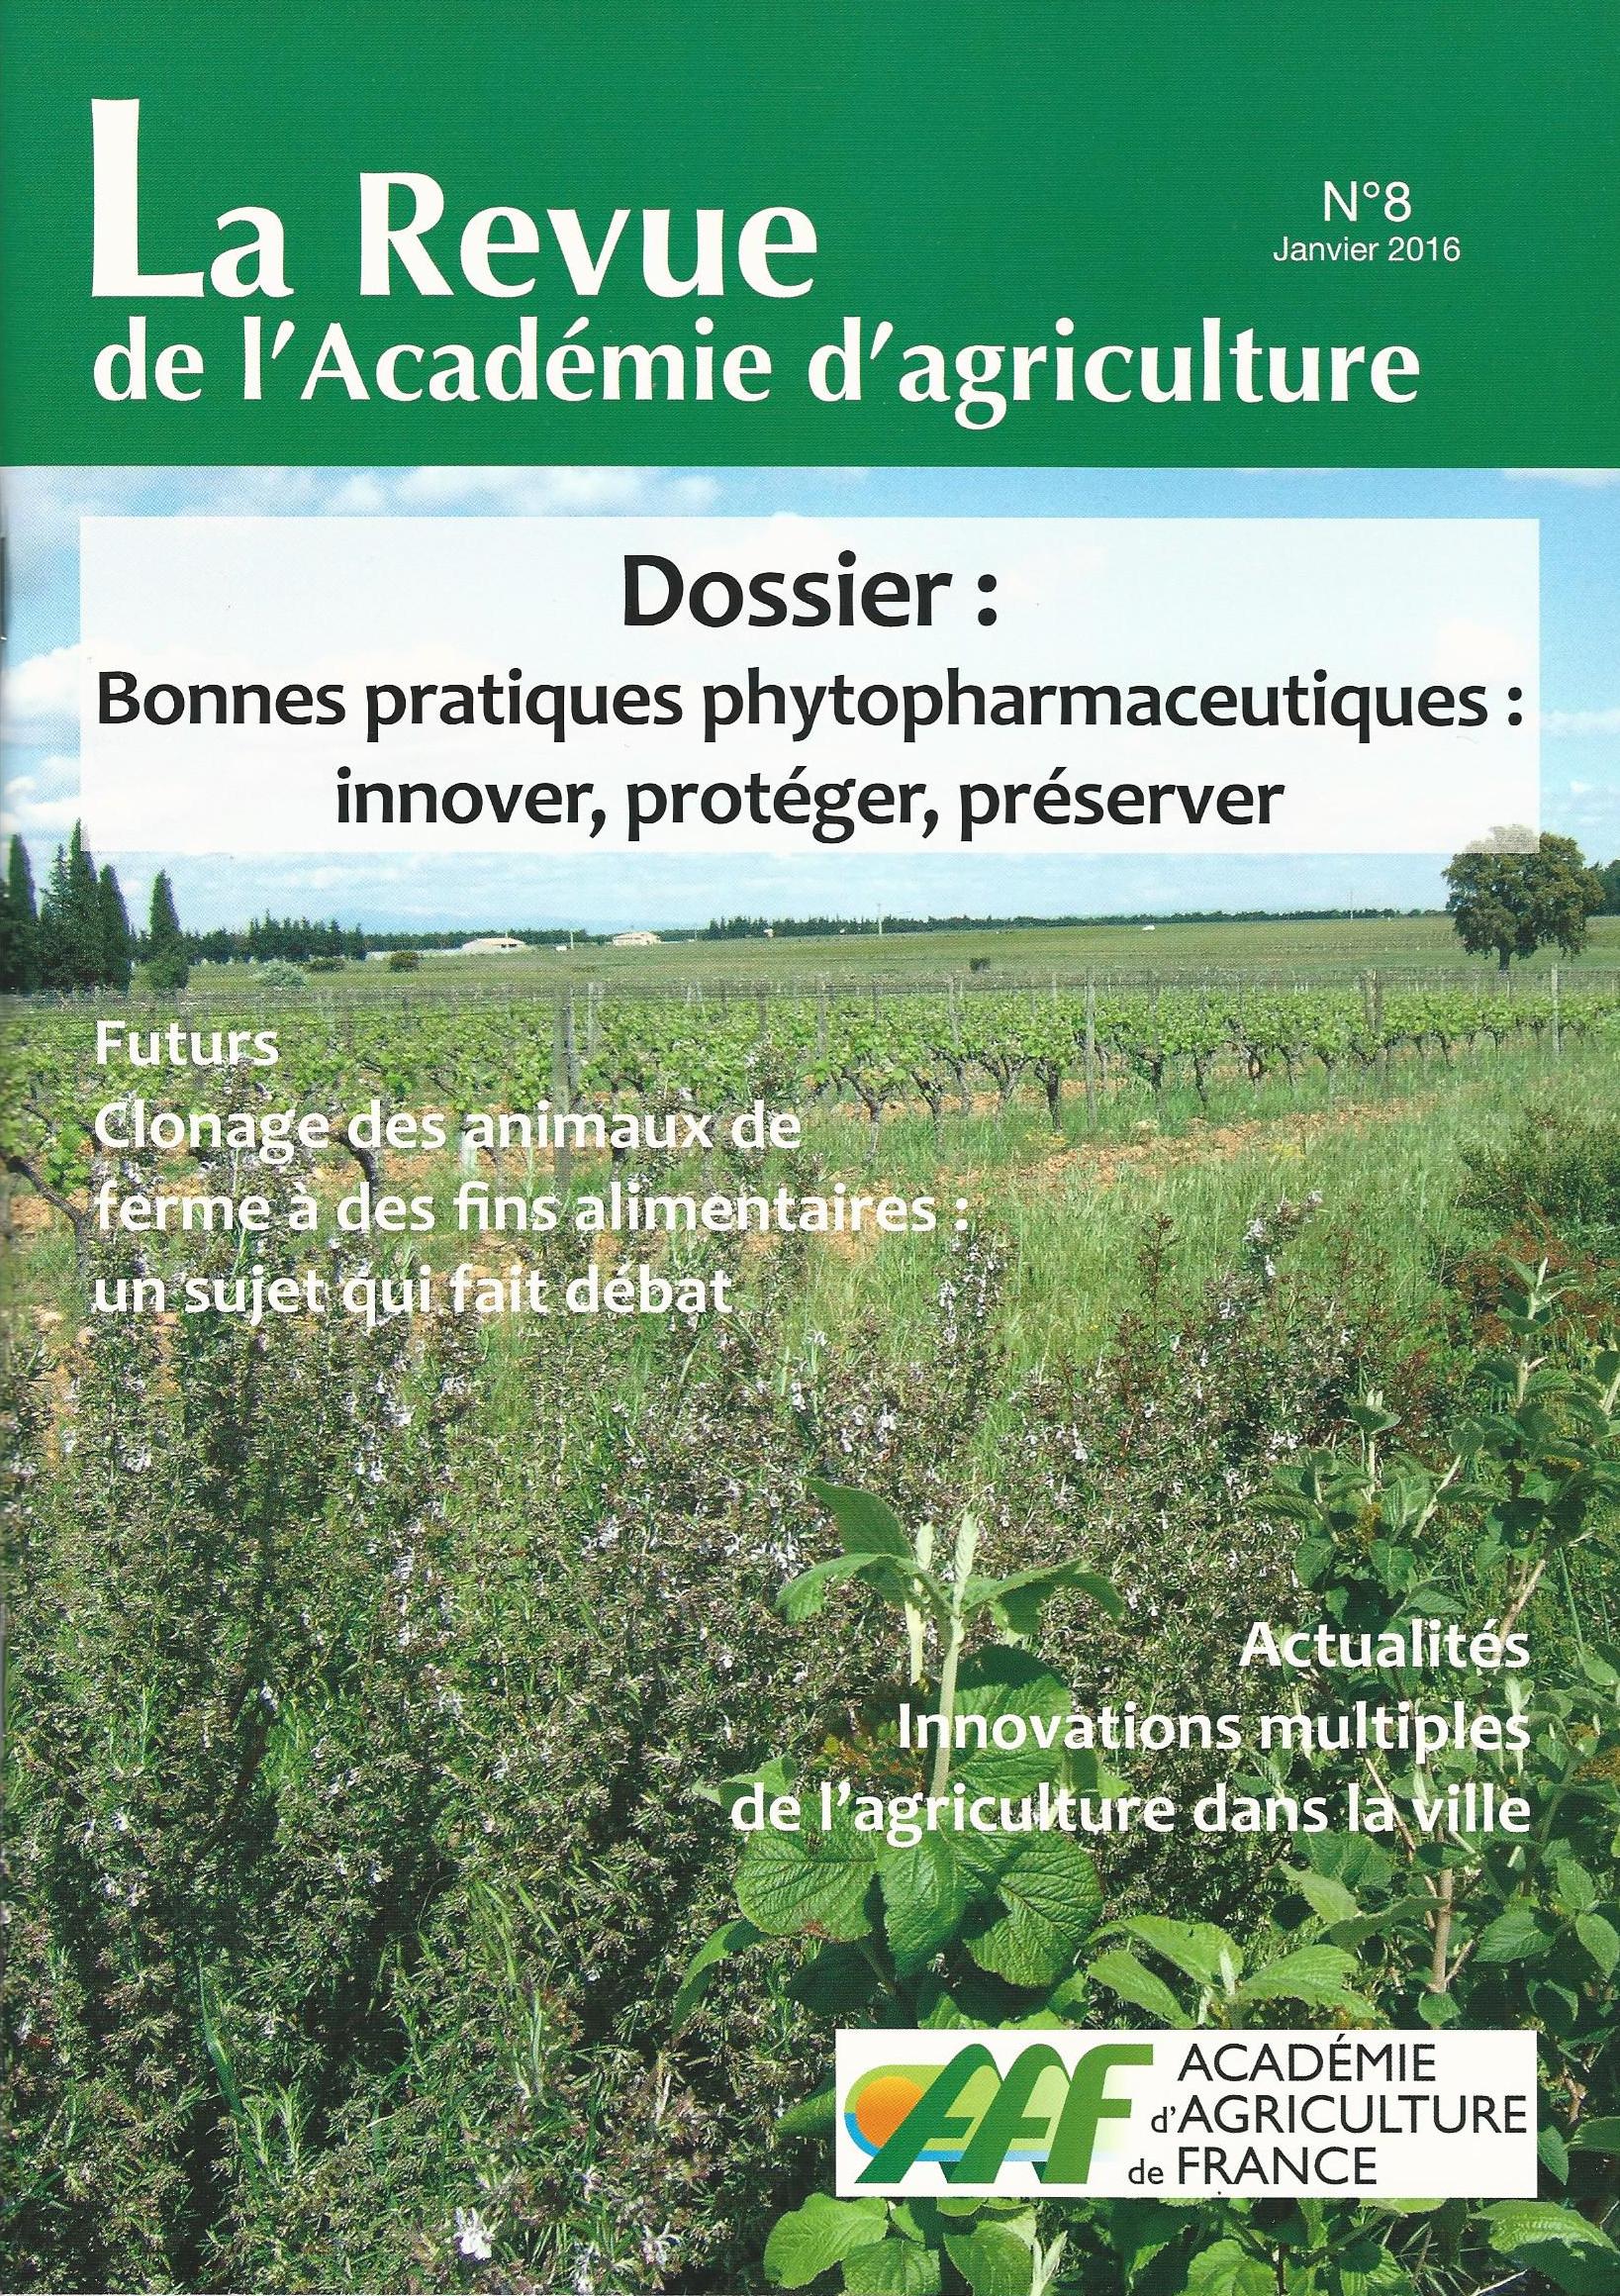 Revue De L Aaf Acad Mie D Agriculture De France